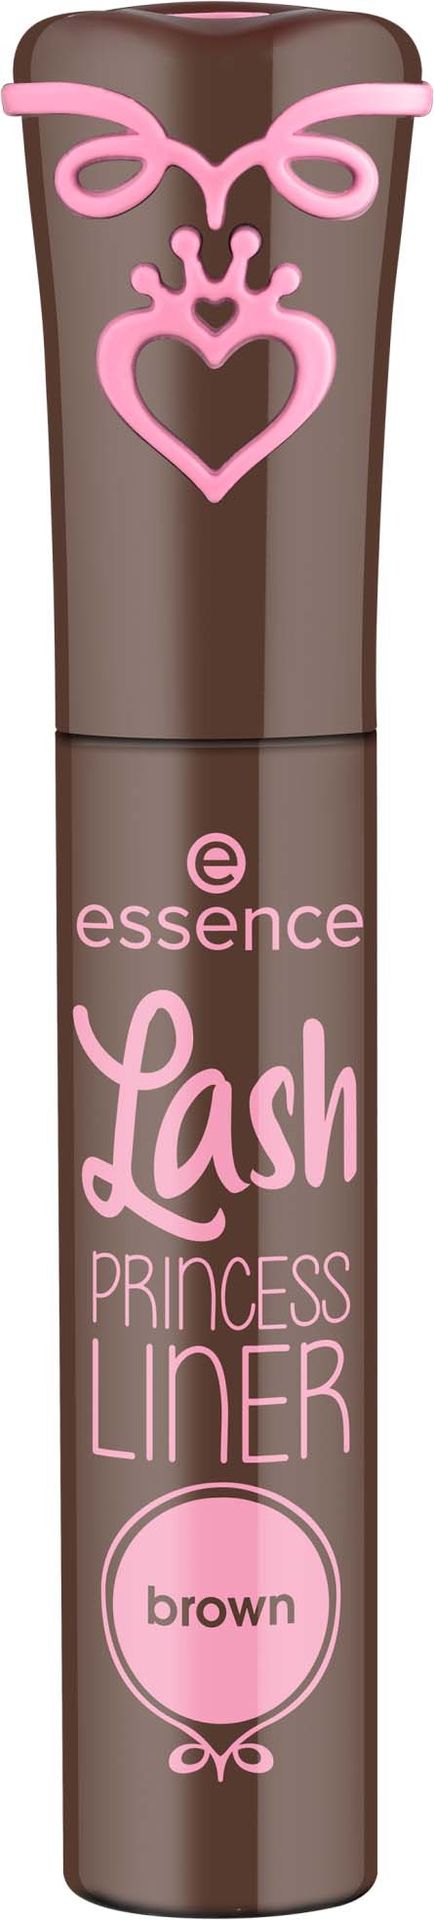 essence essence Lash Princess Liner Brown - brązowy eyeliner 3 ml 3 ml